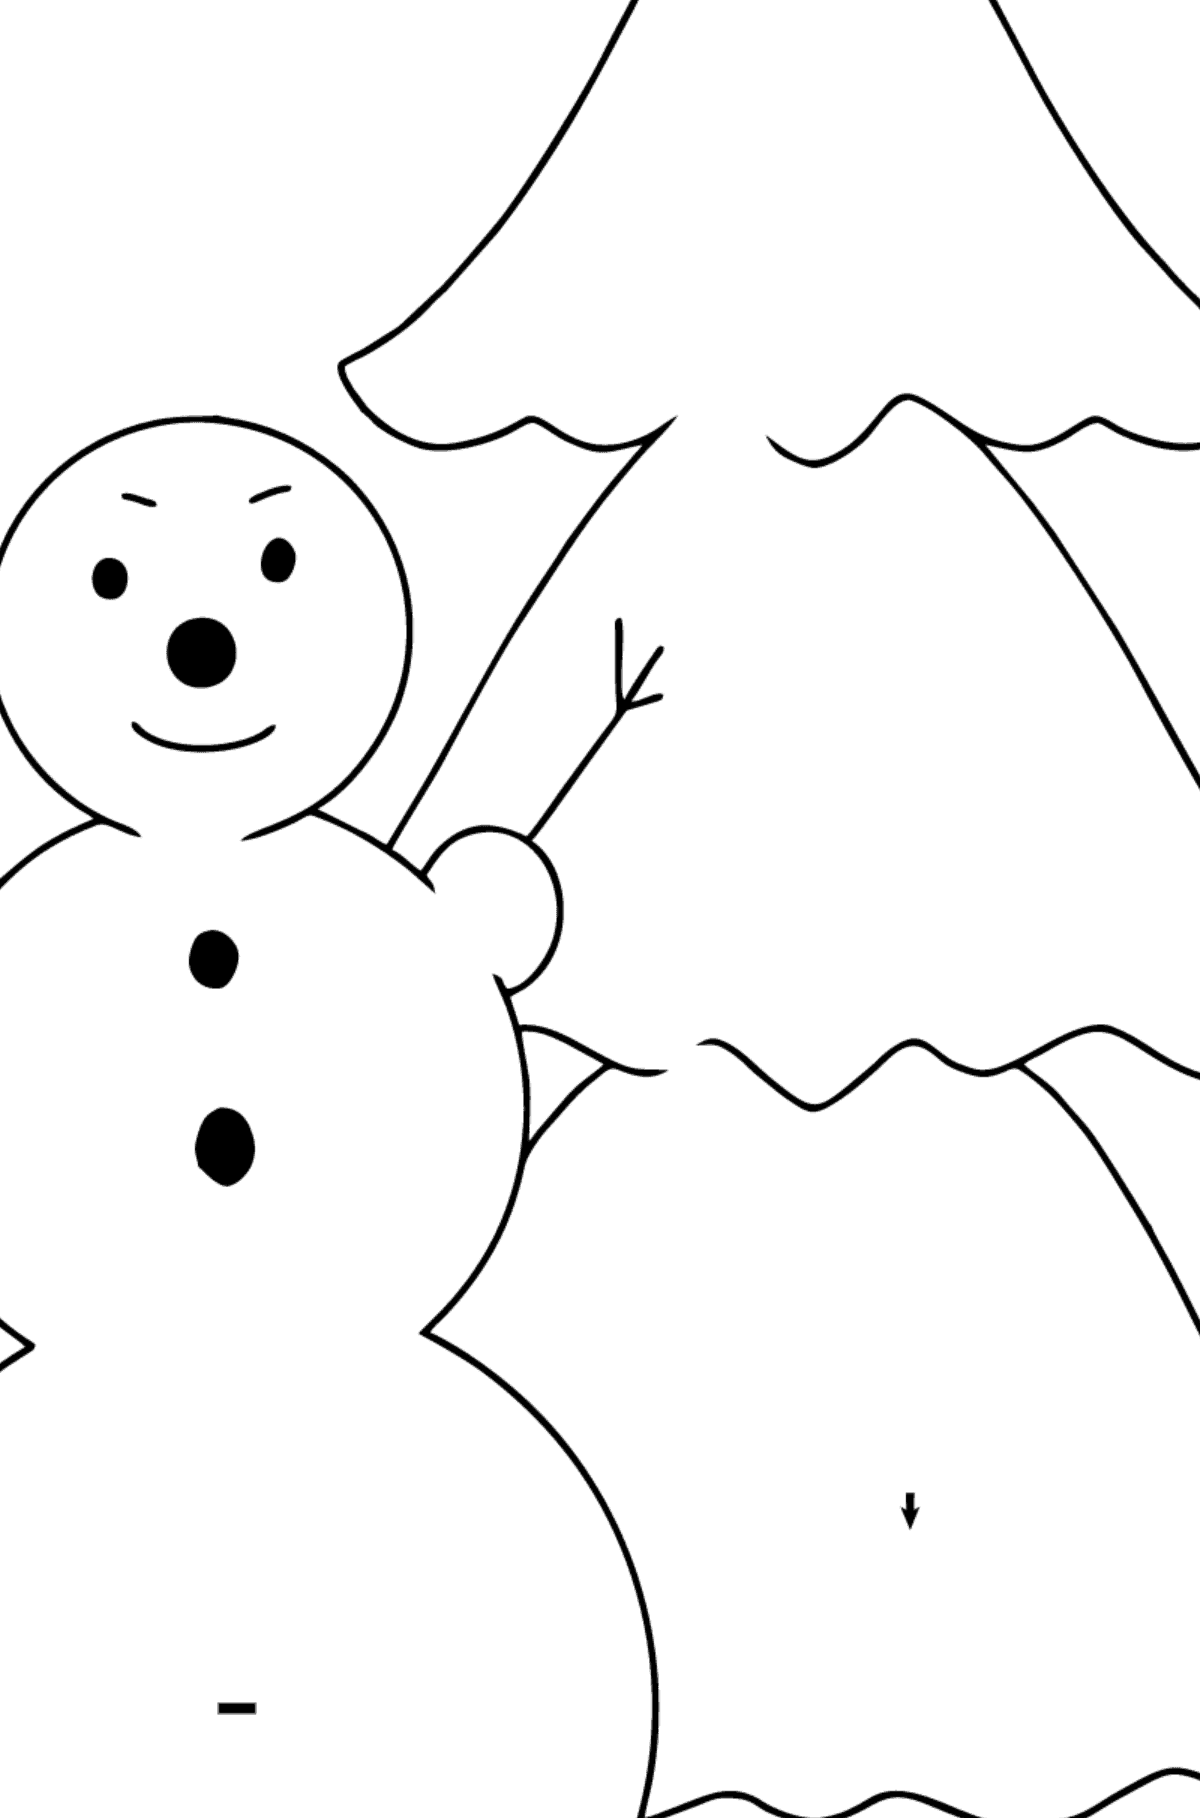 Bonhomme de neige à colorier simple - Coloriage par Symboles pour les Enfants